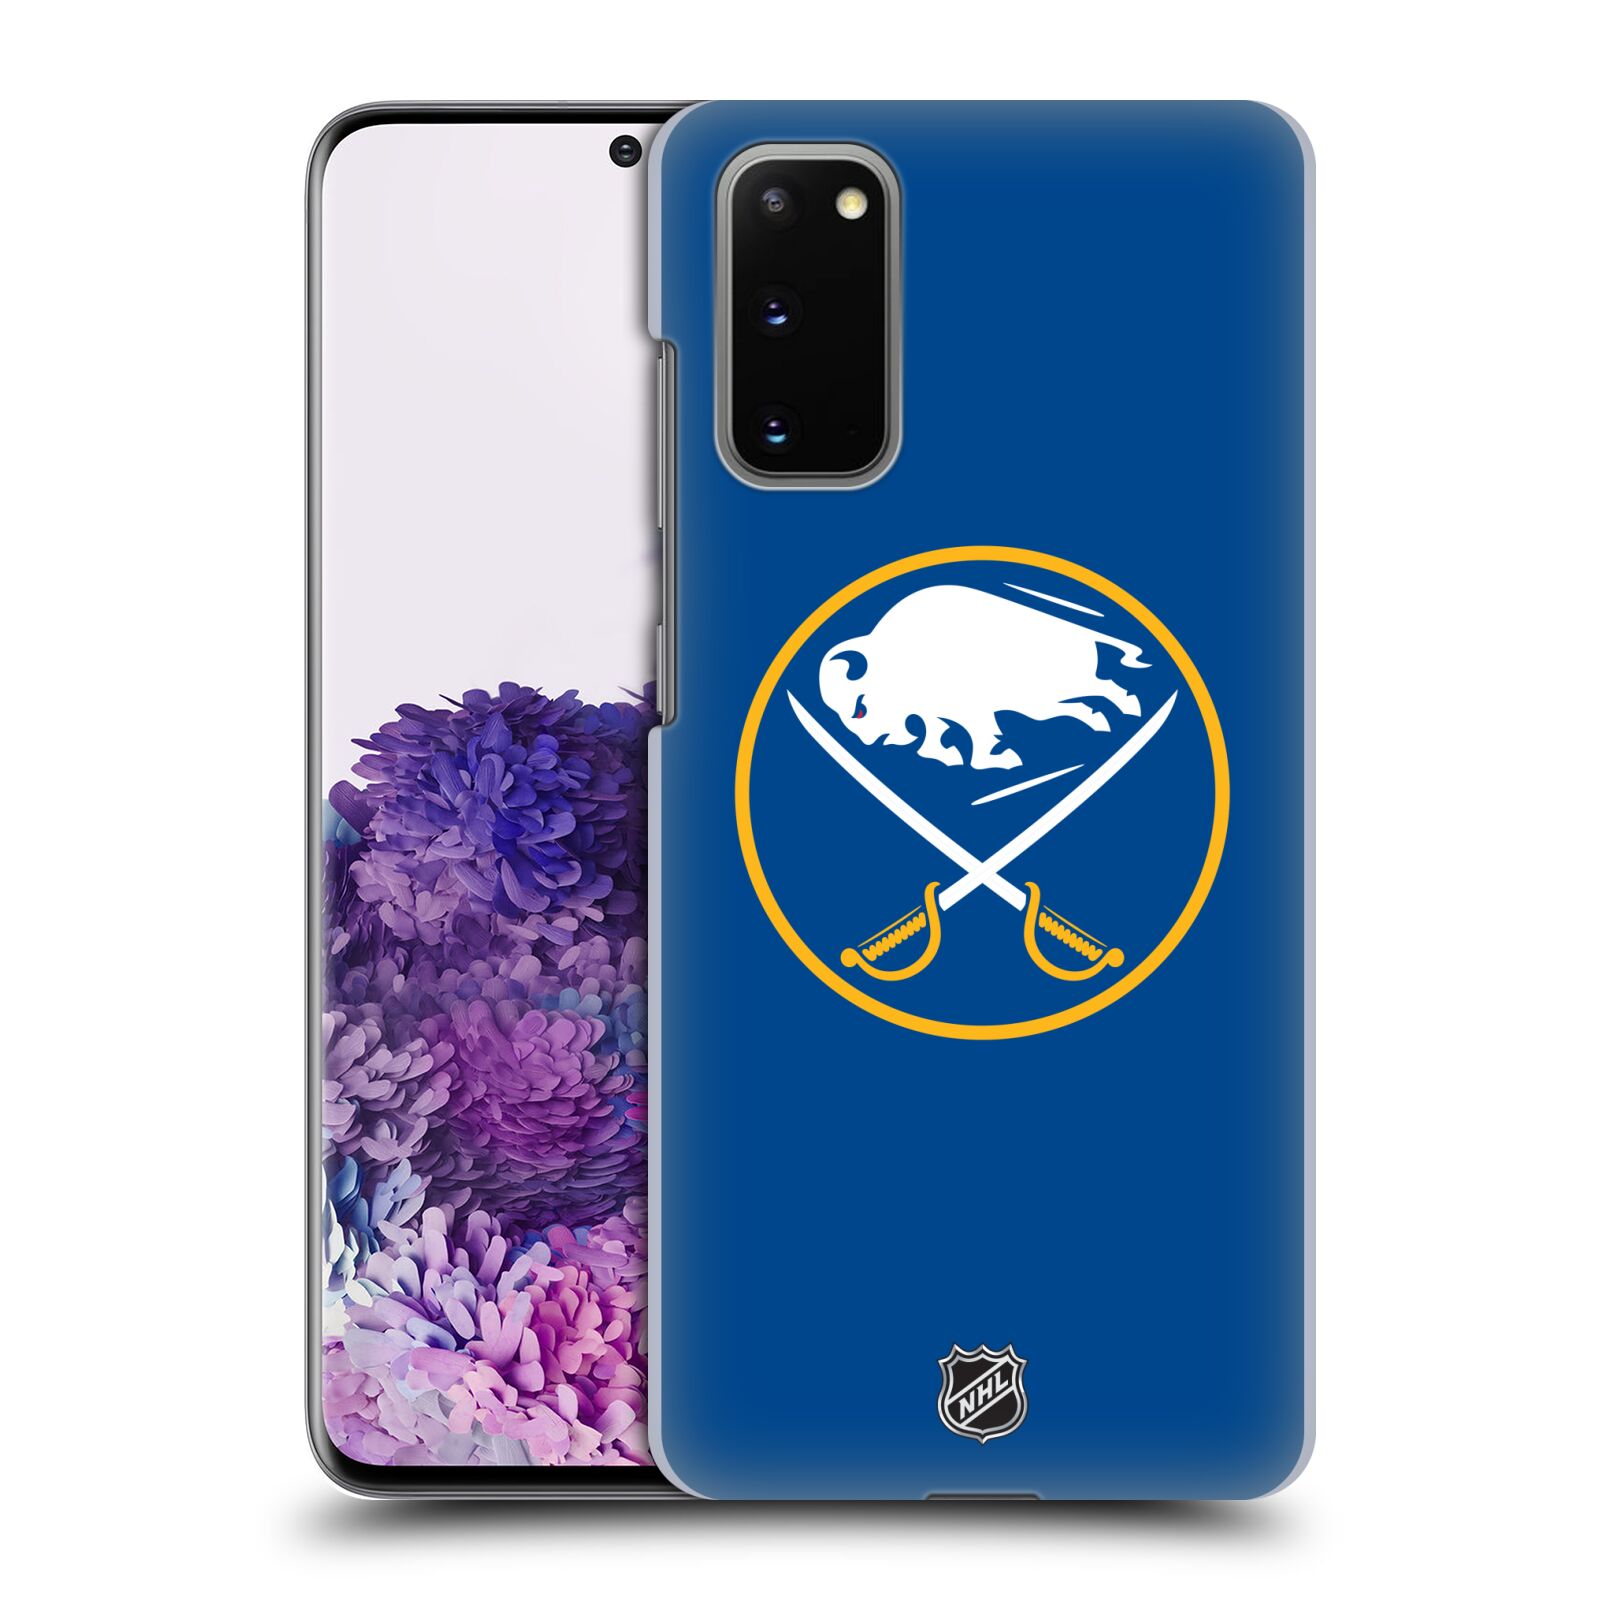 Pouzdro na mobil Samsung Galaxy S20 - HEAD CASE - Hokej NHL - Buffalo Sabres - modré pozadí